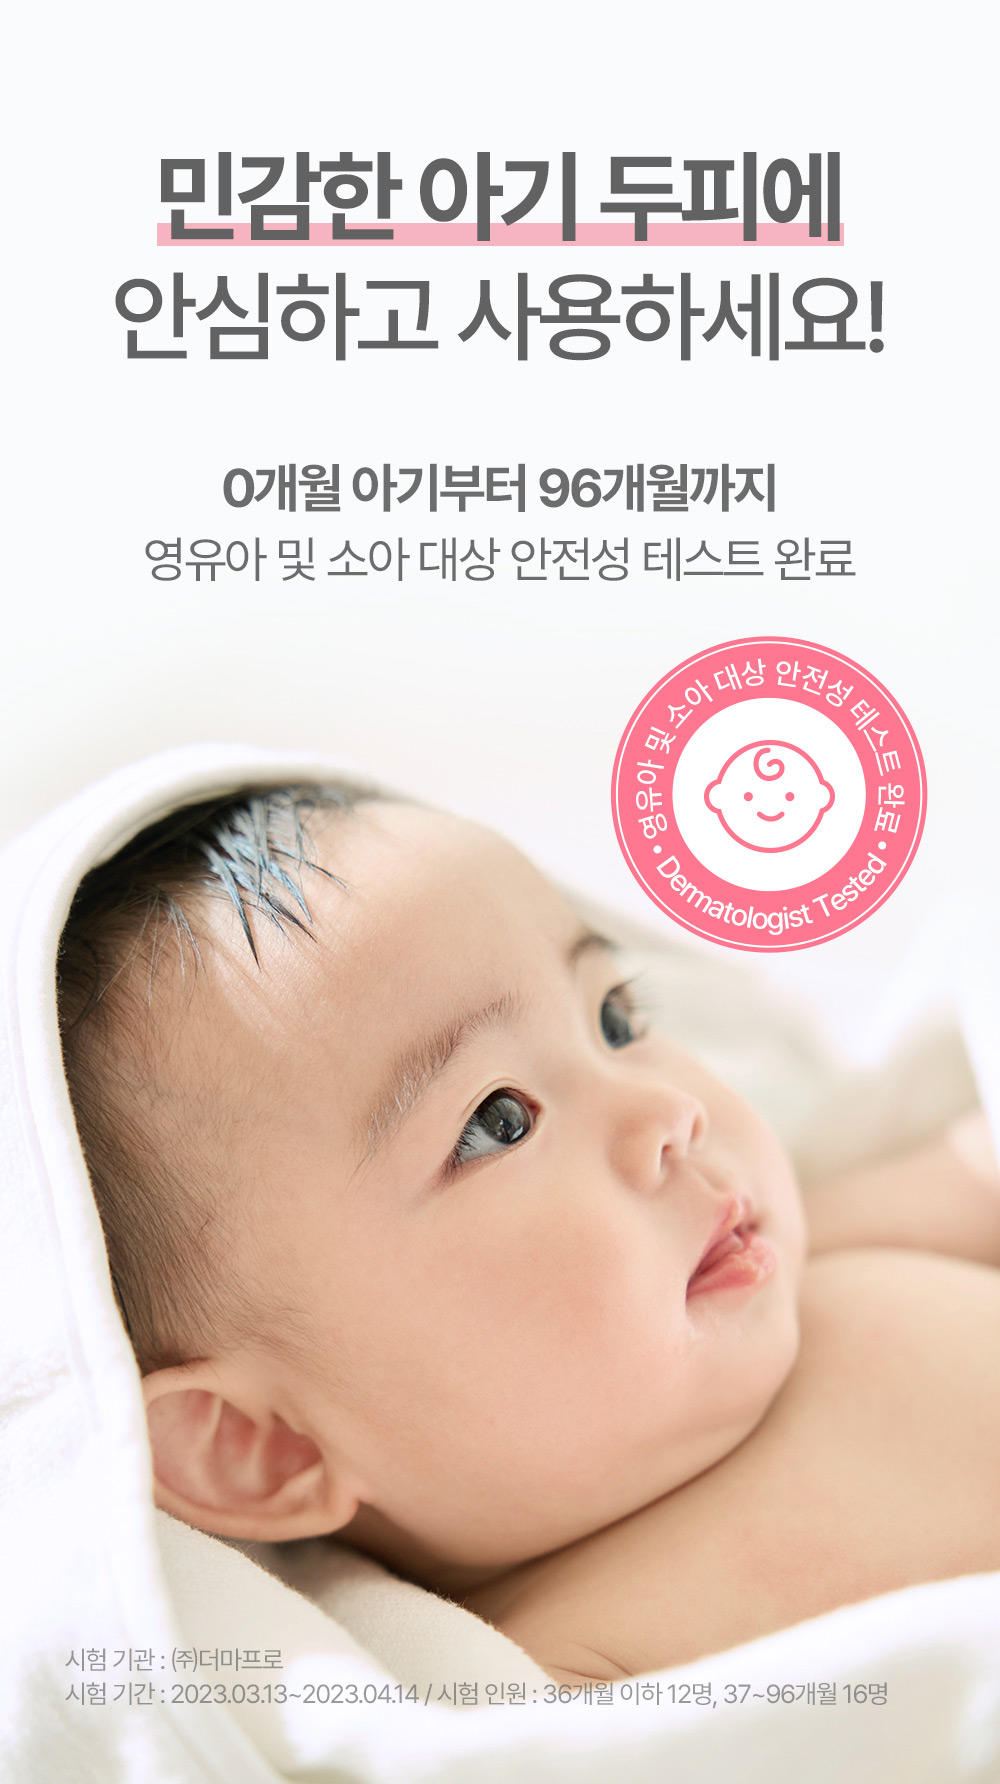 민감한 아기 두피에 안심하고 사용하세요 0개월 아기부터 96개월까지 영유아 및 소아 대상 안전성 테스트 완료